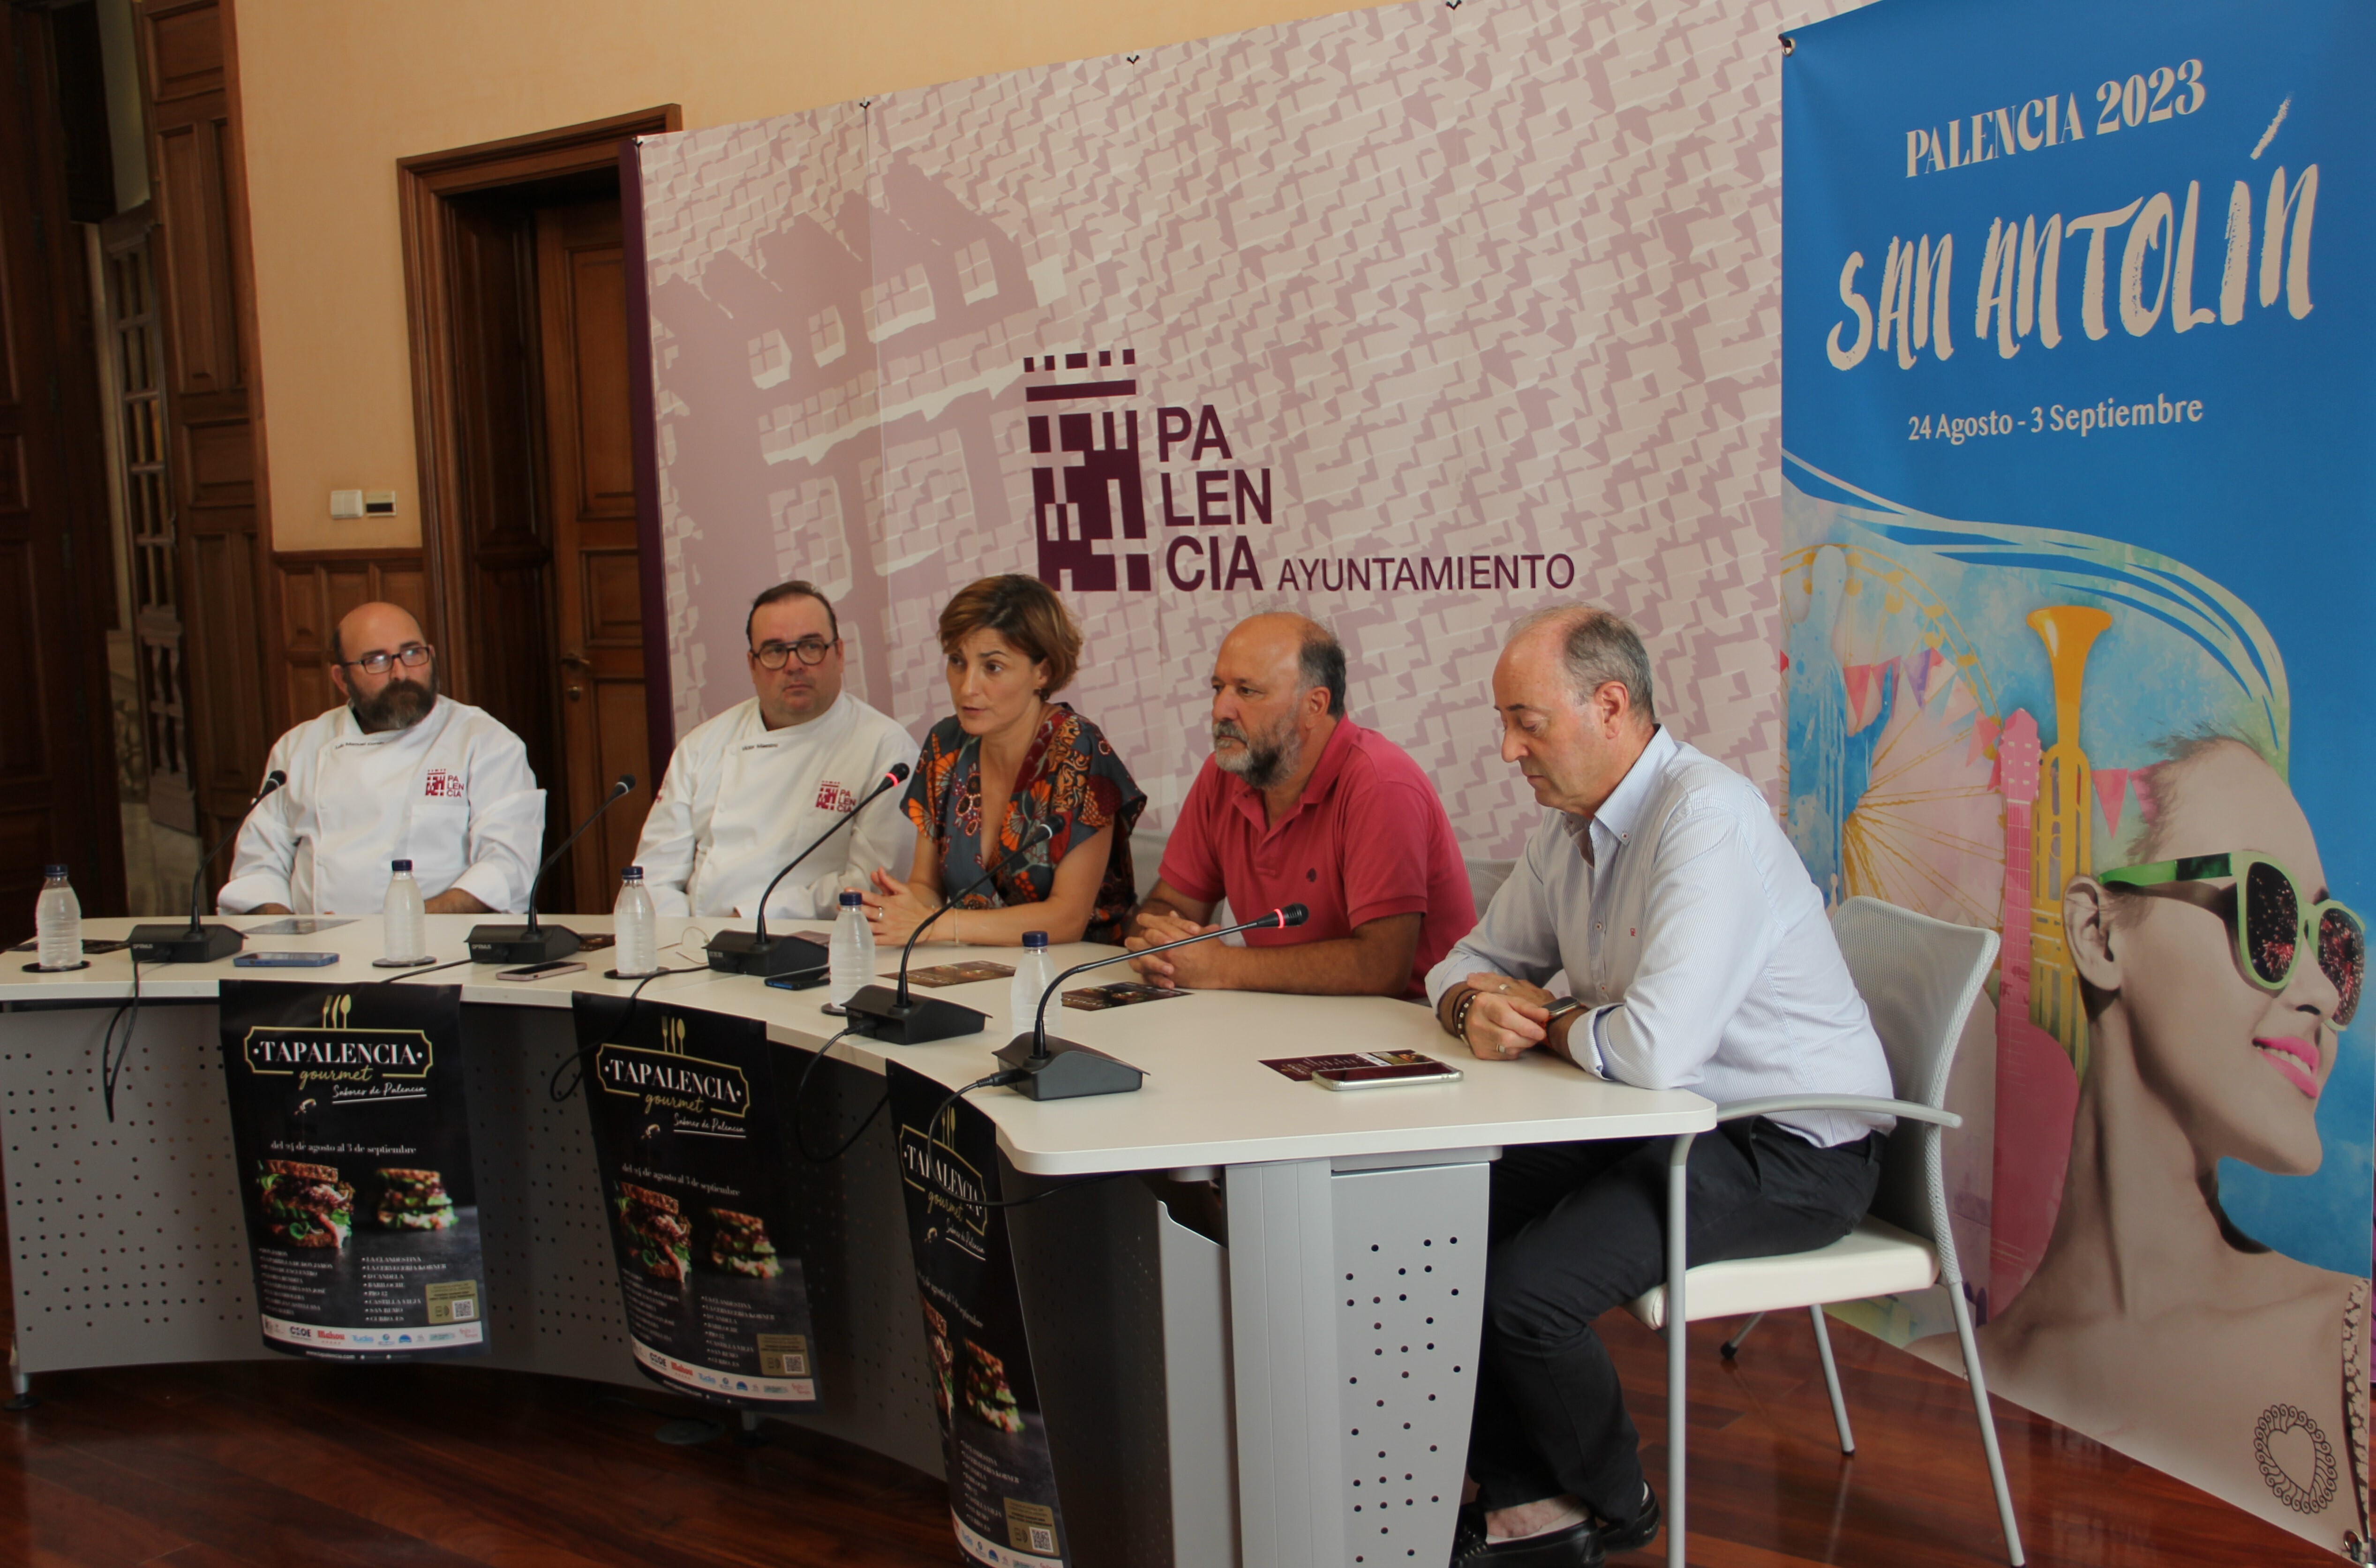  ‘Tarpalencia Gourmet. Sabores de Palencia’ se desarrollará del 24 de agosto al 3 de septiembre